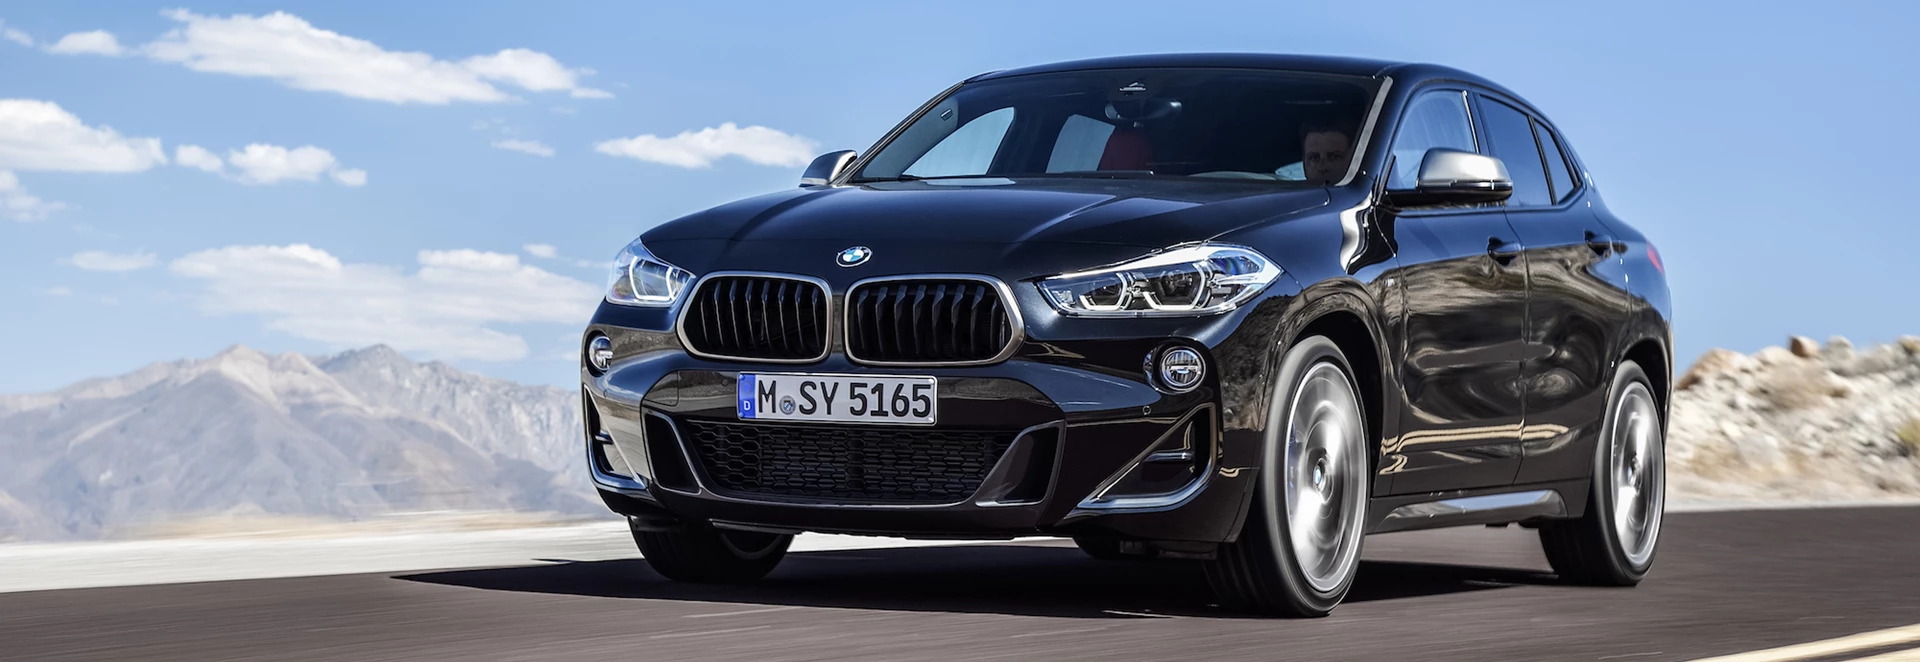 BMW X2 M35i revealed